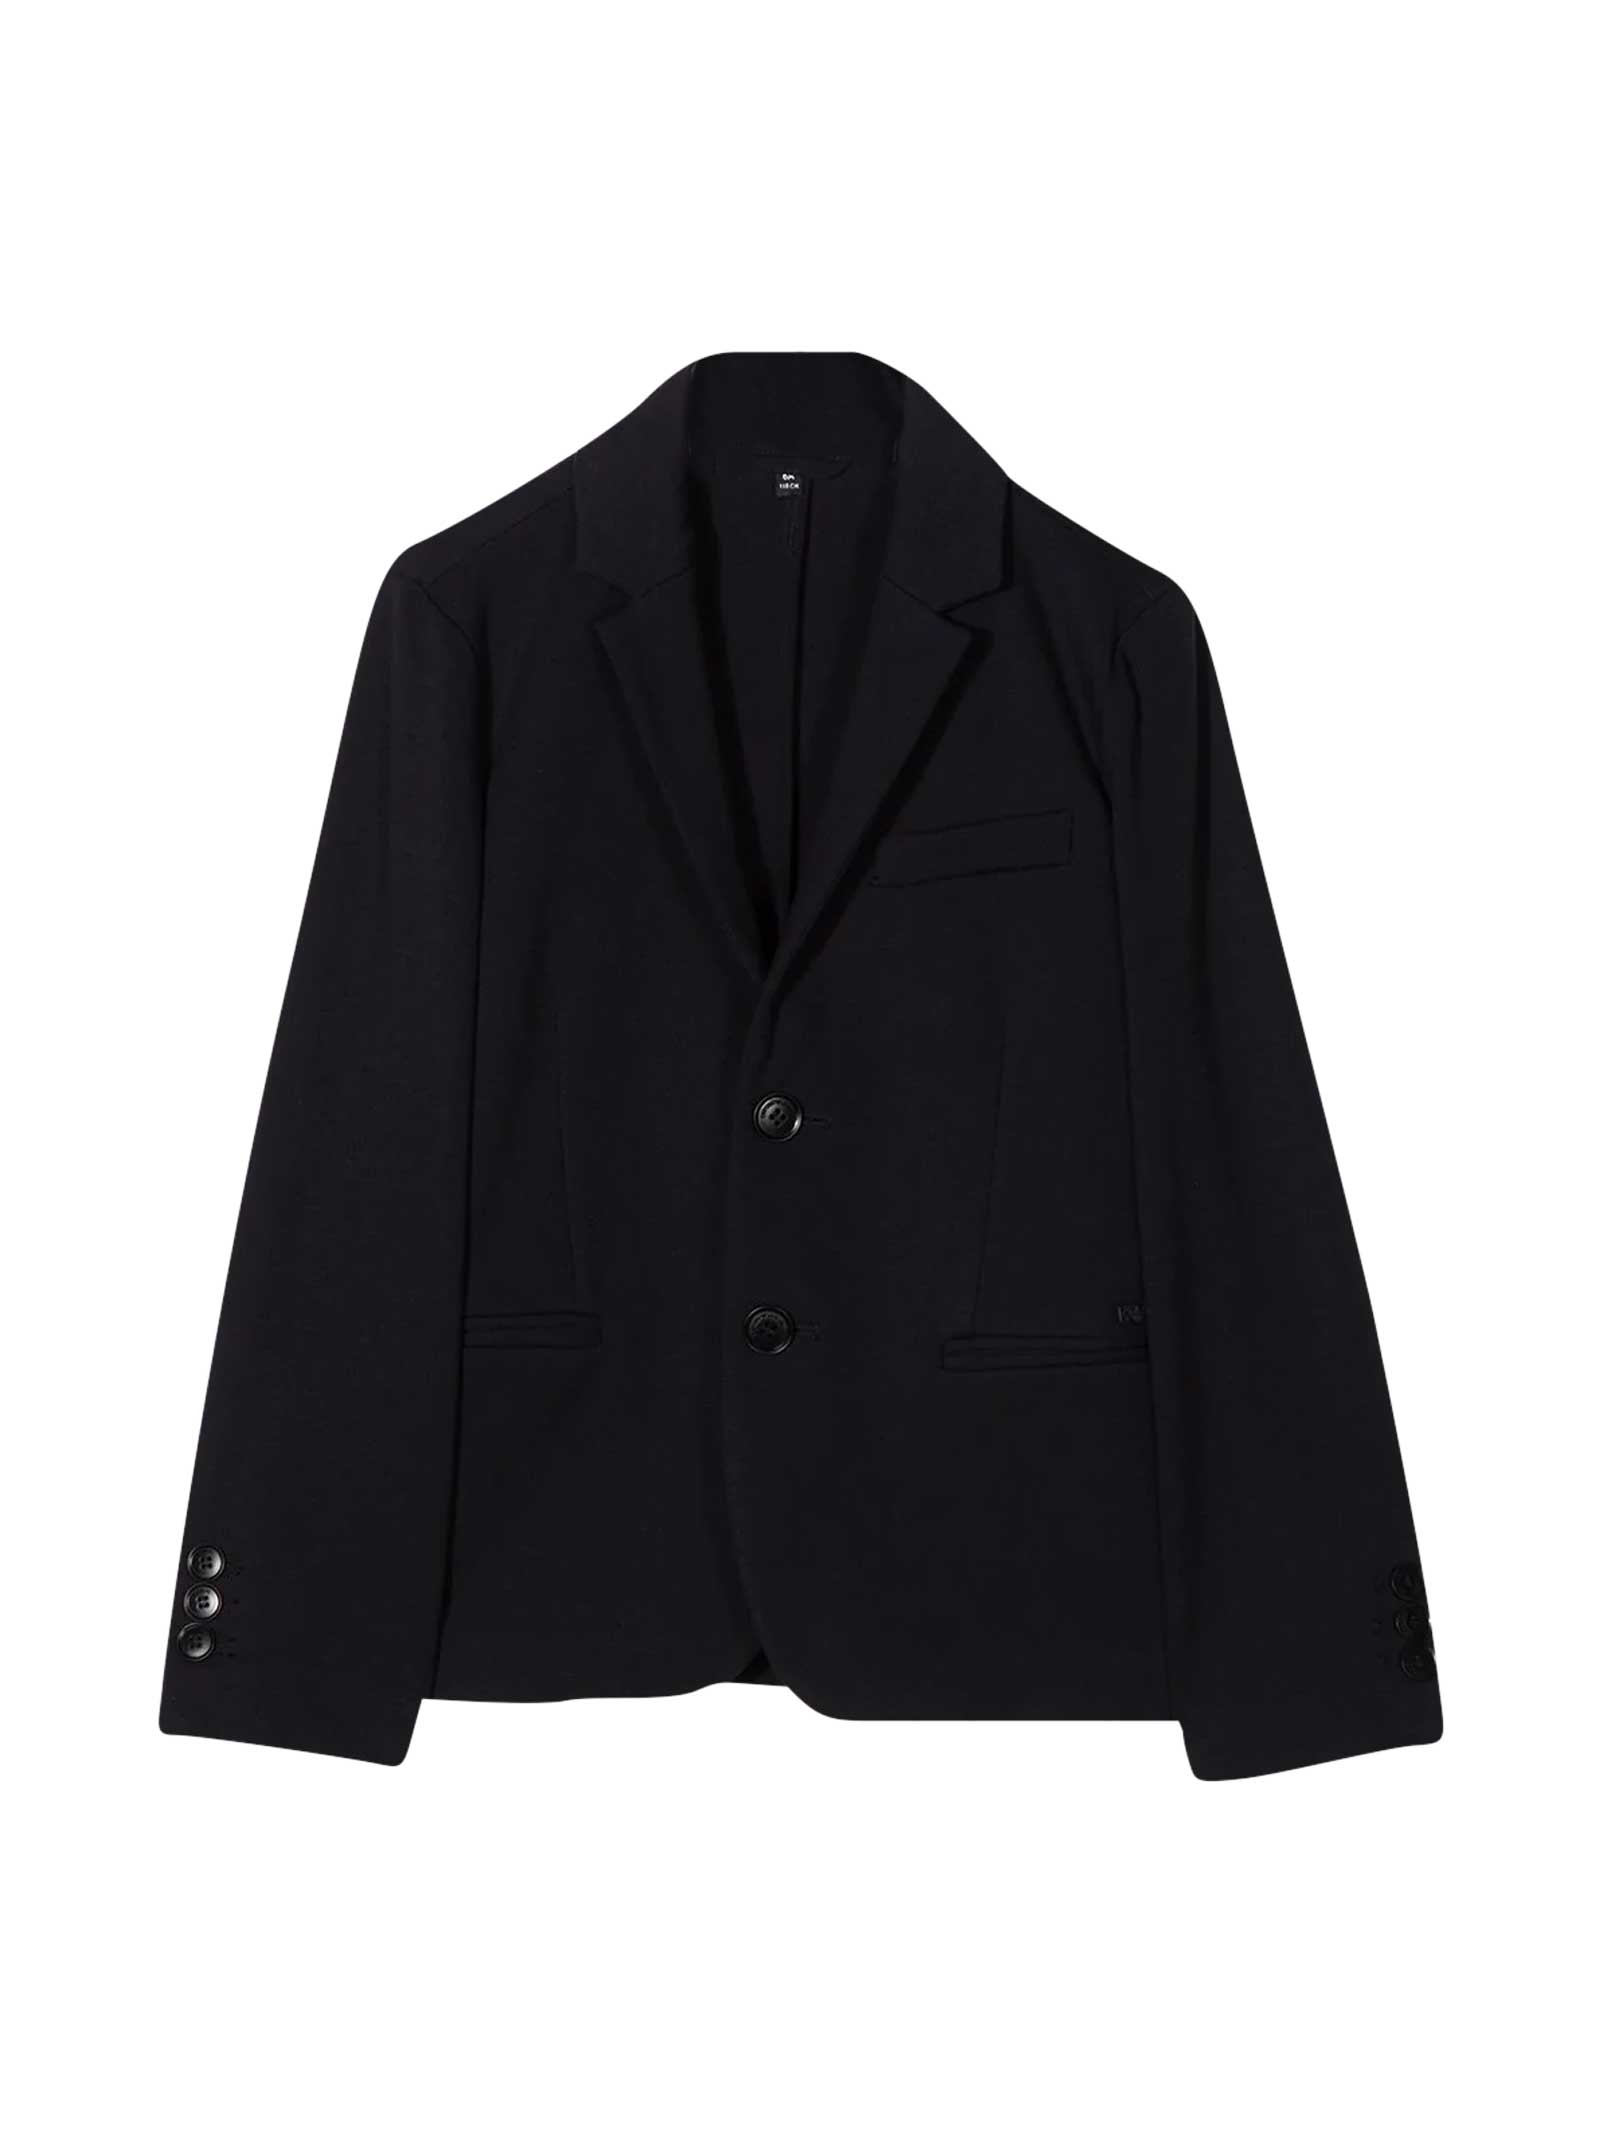 Emporio Armani black blazer